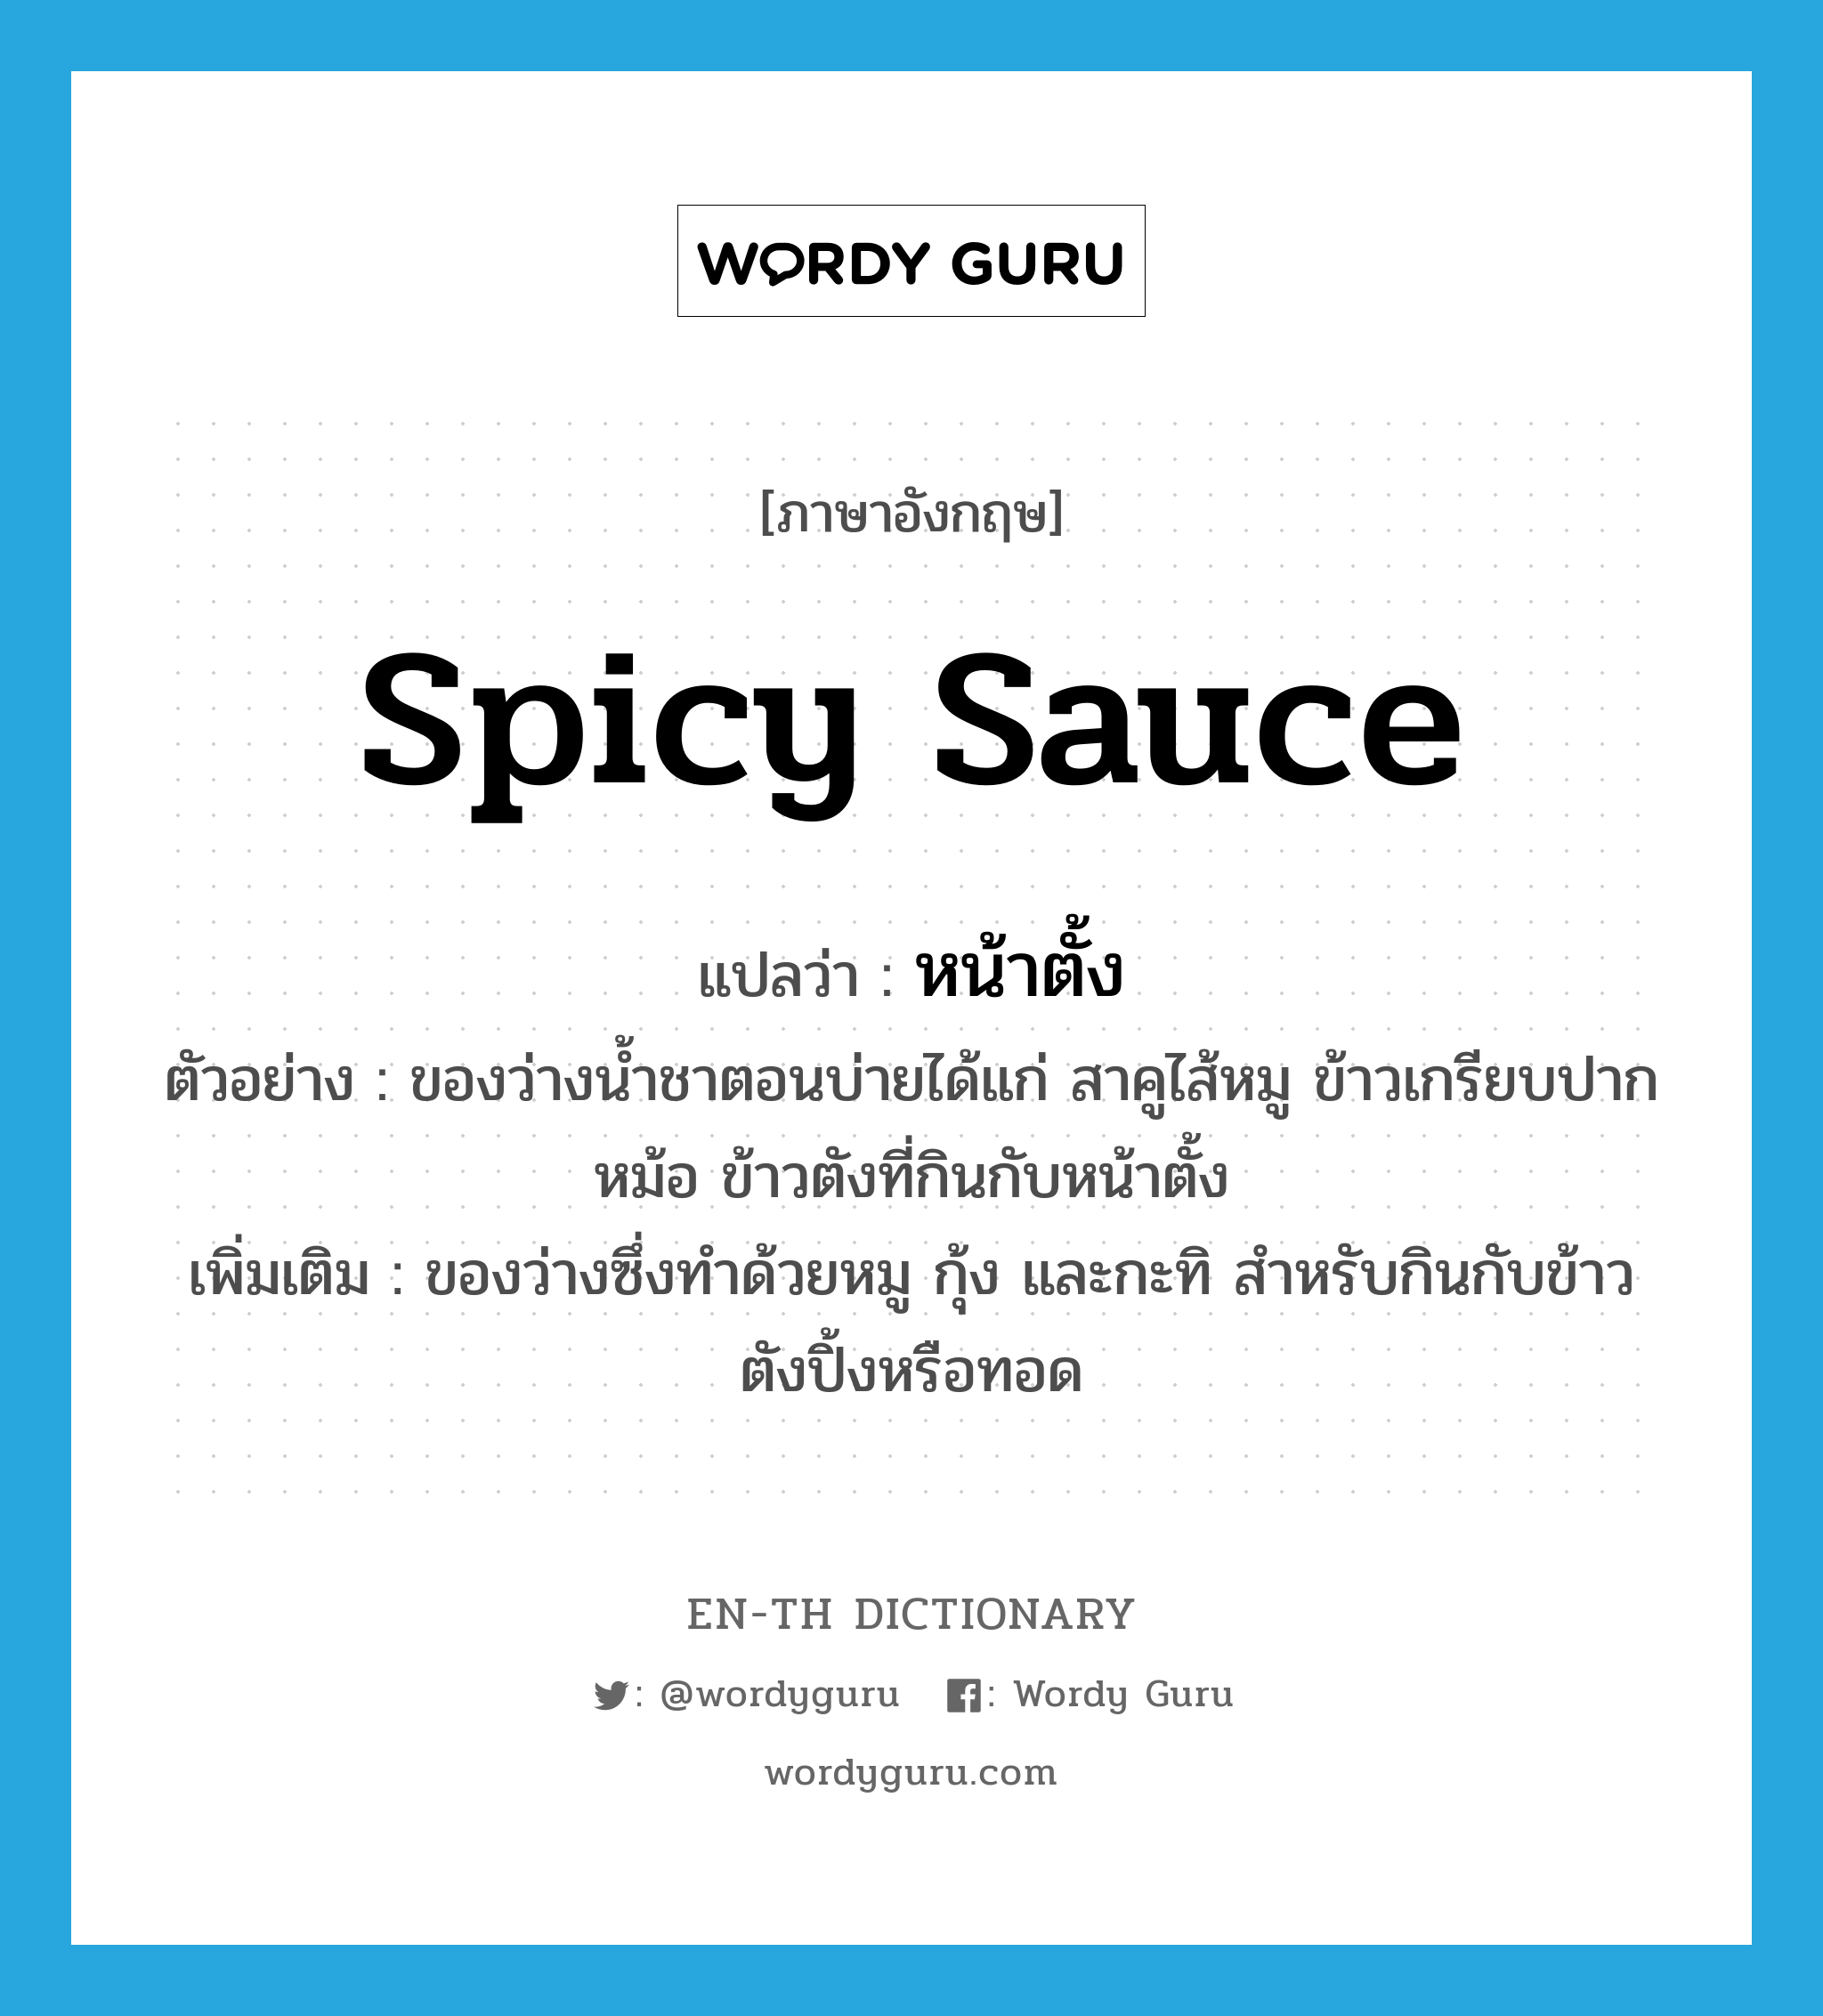 spicy sauce แปลว่า?, คำศัพท์ภาษาอังกฤษ spicy sauce แปลว่า หน้าตั้ง ประเภท N ตัวอย่าง ของว่างน้ำชาตอนบ่ายได้แก่ สาคูไส้หมู ข้าวเกรียบปากหม้อ ข้าวตังที่กินกับหน้าตั้ง เพิ่มเติม ของว่างซึ่งทำด้วยหมู กุ้ง และกะทิ สำหรับกินกับข้าวตังปิ้งหรือทอด หมวด N